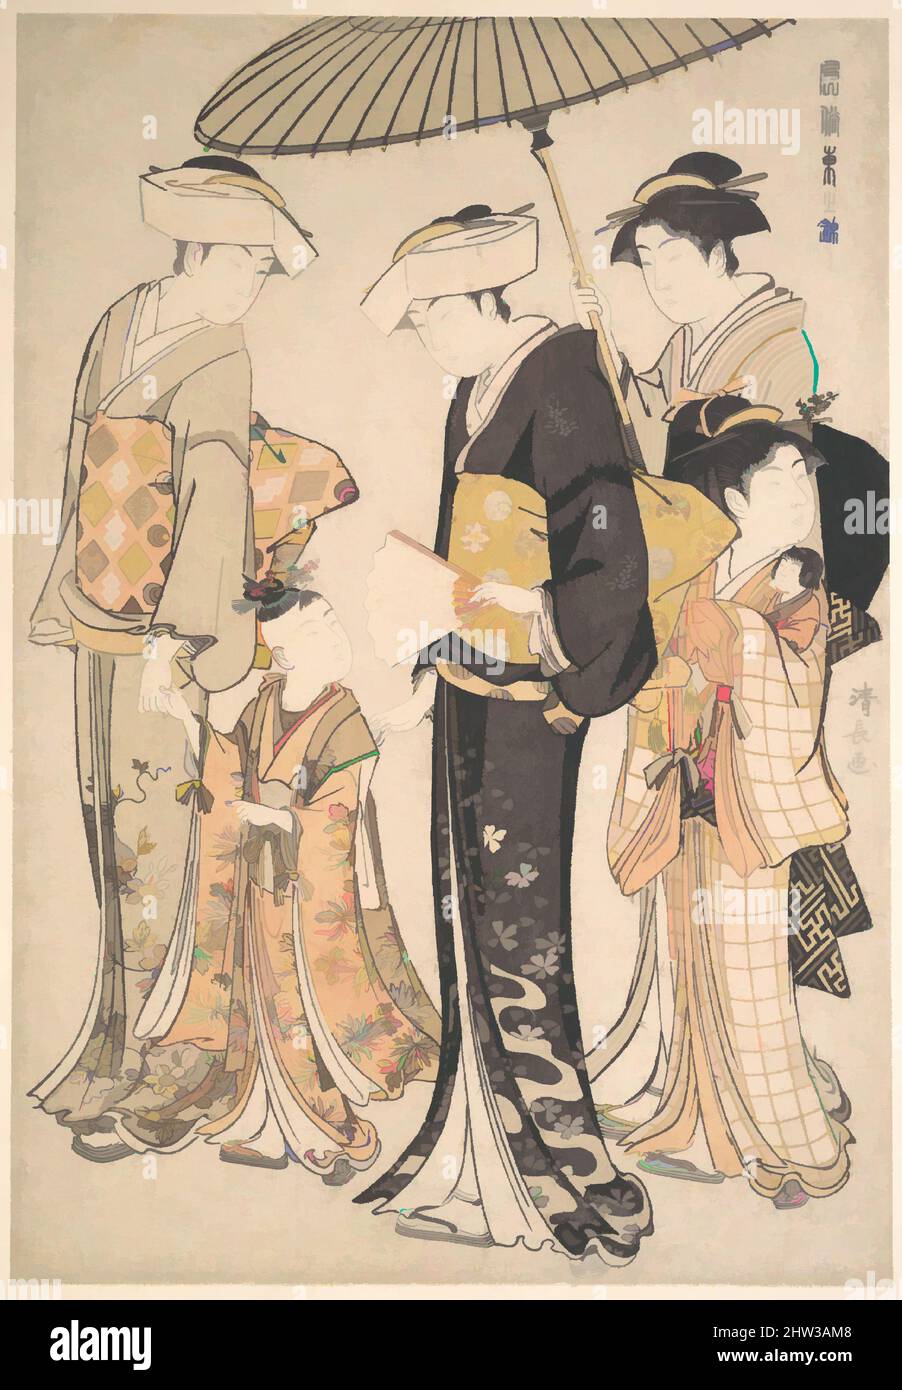 Kunst inspiriert von 「風俗東之錦」 姫君と侍女四人, hochrangige Samurai Girl mit vier Teilnehmern, aus der Serie A Brocade of Eastern Manners (Fūzoku Azuma no nishiki), Edo-Periode (1615–1868), ca. 1784, Japan, Polychromer Holzschnitt; Tinte und Farbe auf Papier, 15 x 10 Zoll (38,1 x 25,4 cm), Drucke, von Artotop modernisierte Klassiker mit einem Schuss Moderne. Formen, Farbe und Wert, auffällige visuelle Wirkung auf Kunst. Emotionen durch Freiheit von Kunstwerken auf zeitgemäße Weise. Eine zeitlose Botschaft, die eine wild kreative neue Richtung verfolgt. Künstler, die sich dem digitalen Medium zuwenden und die Artotop NFT erschaffen Stockfoto